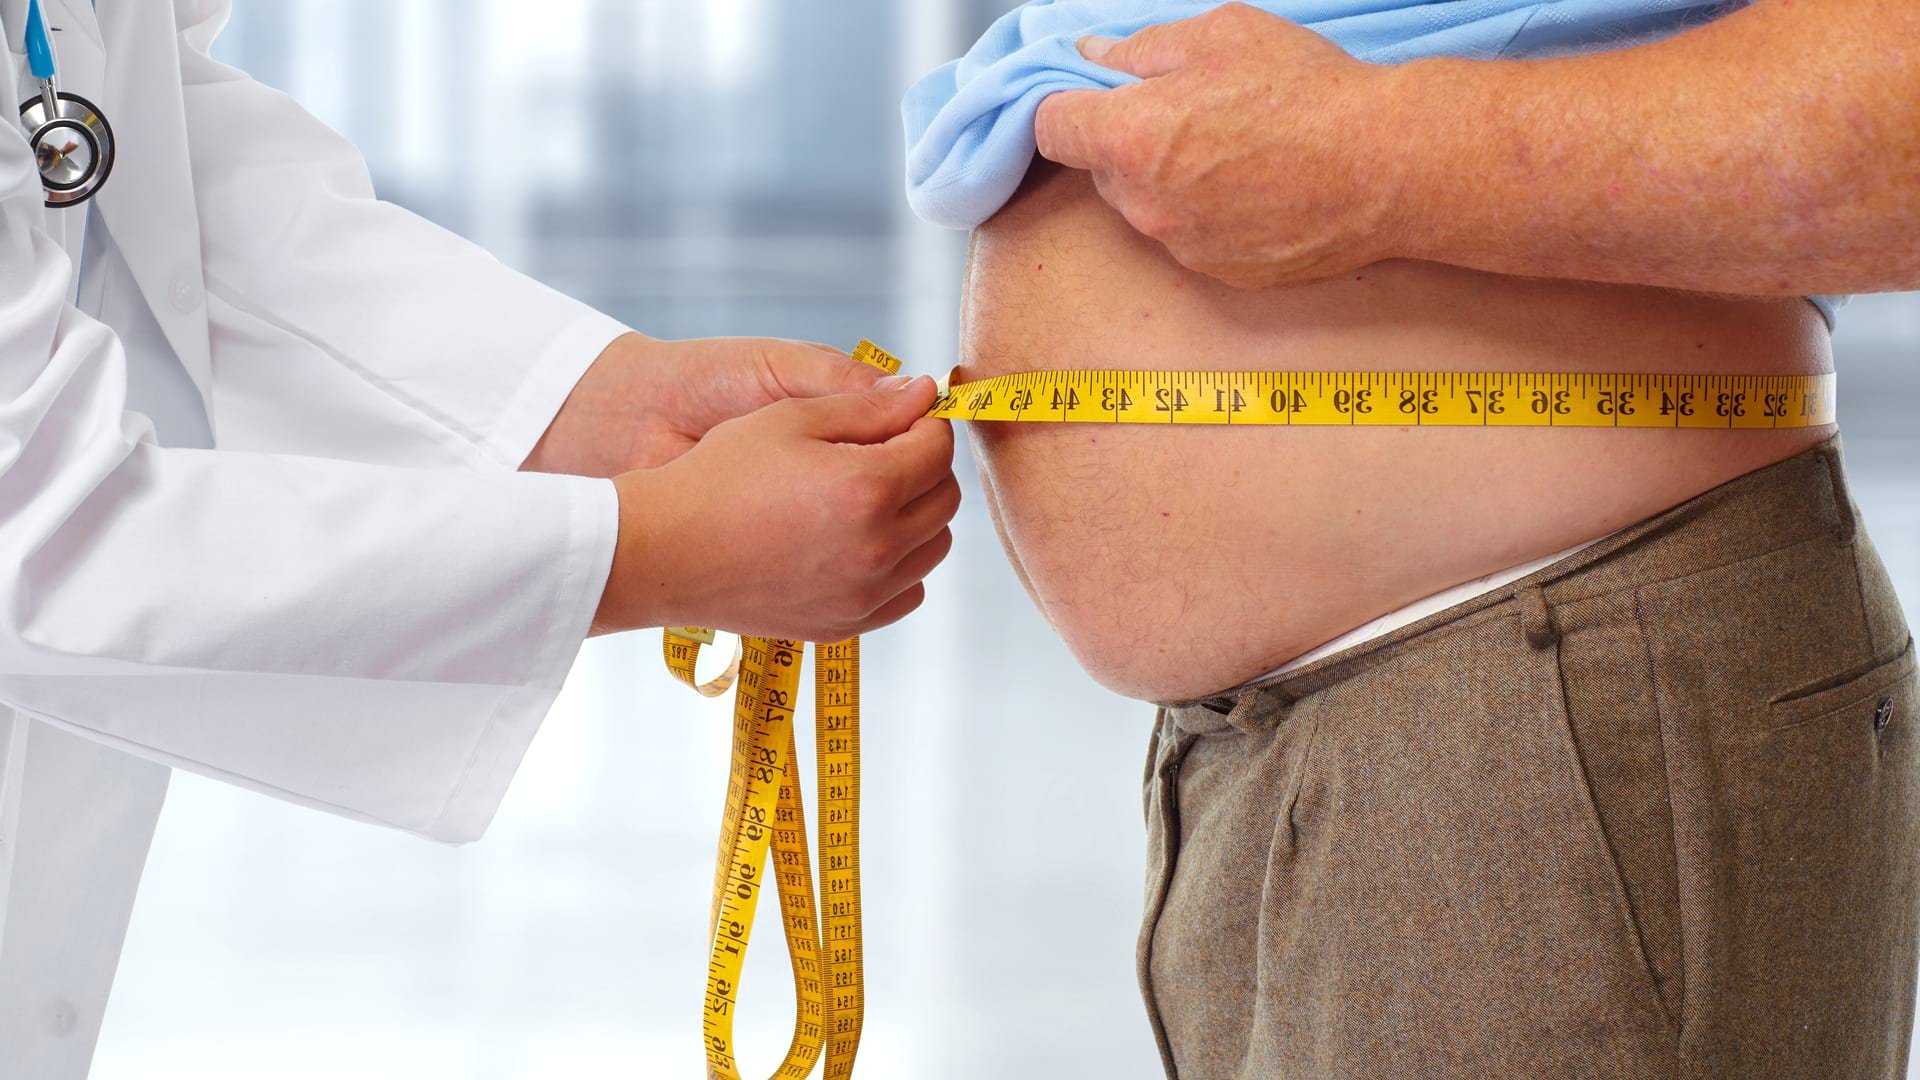  A fost identificată cauza principală a obezității?